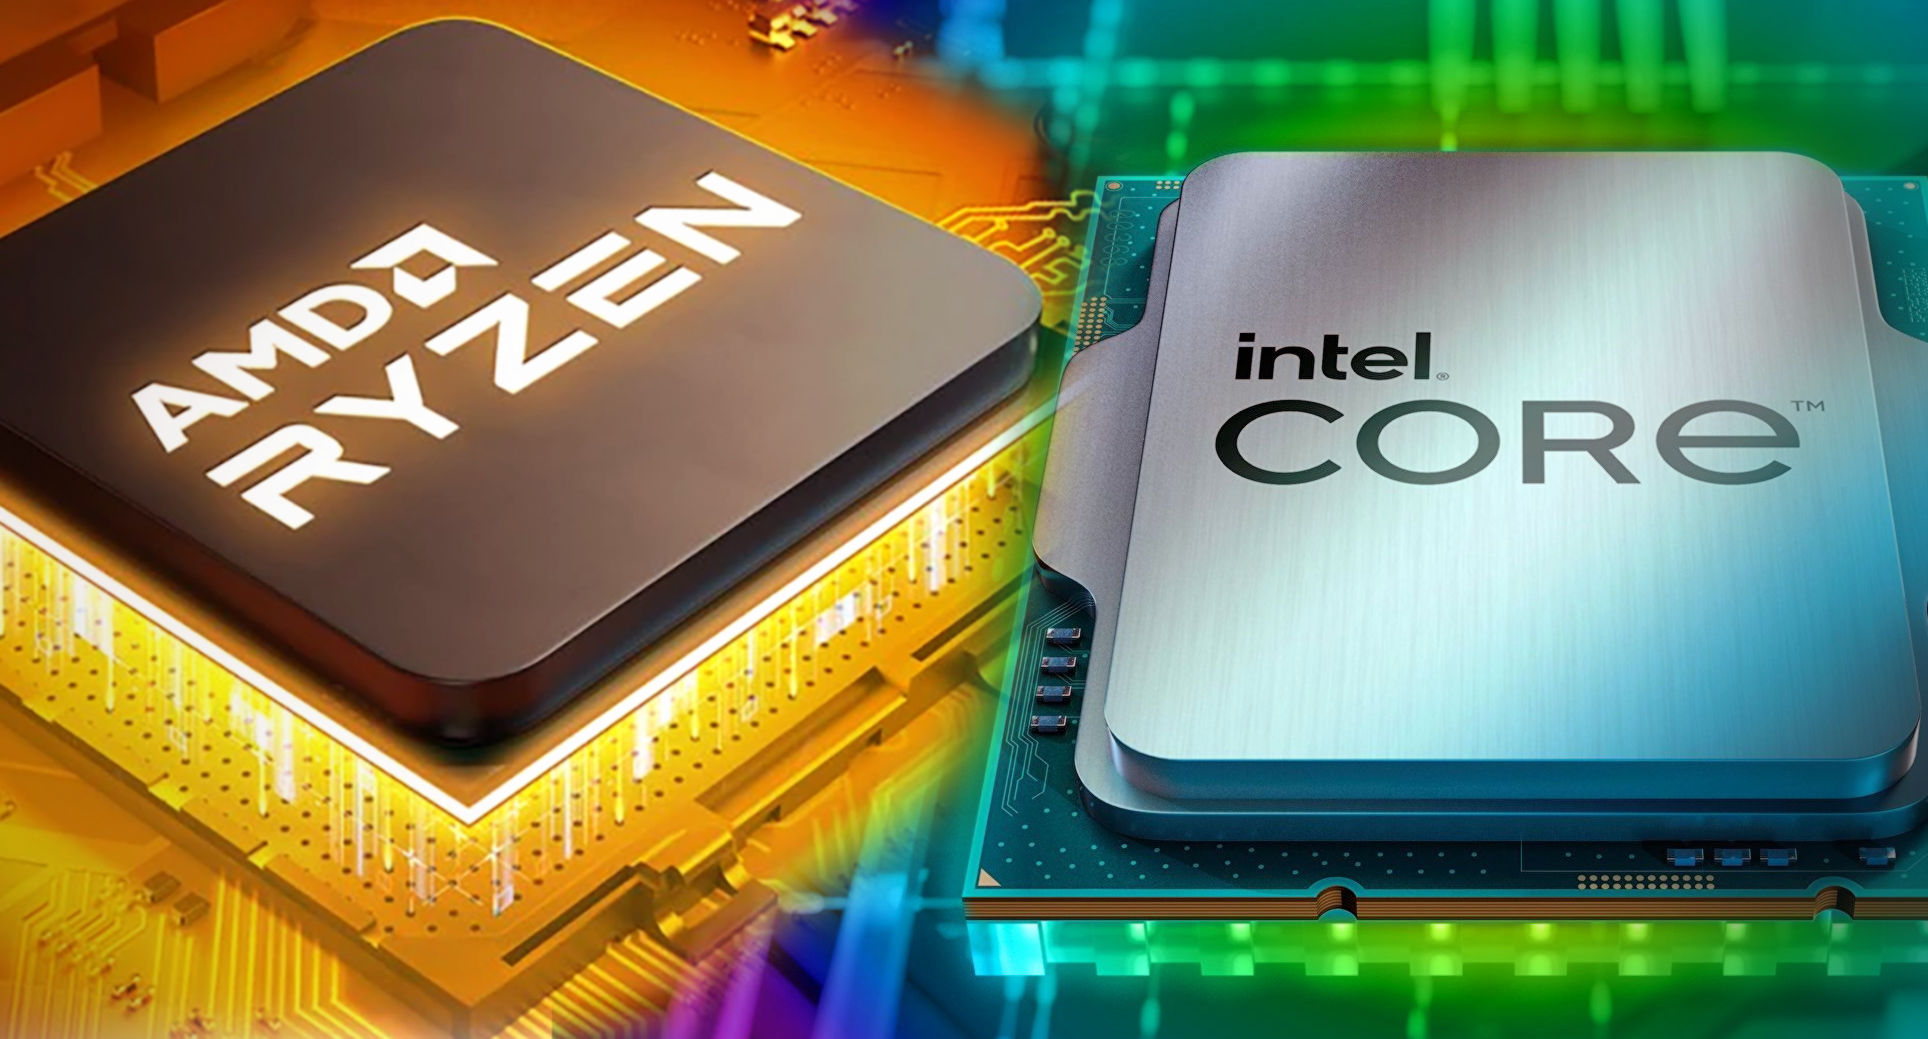 Vì sao chúng ta chỉ có 2 hãng CPU là AMD và Intel? Đây là câu trả lời cho bạn